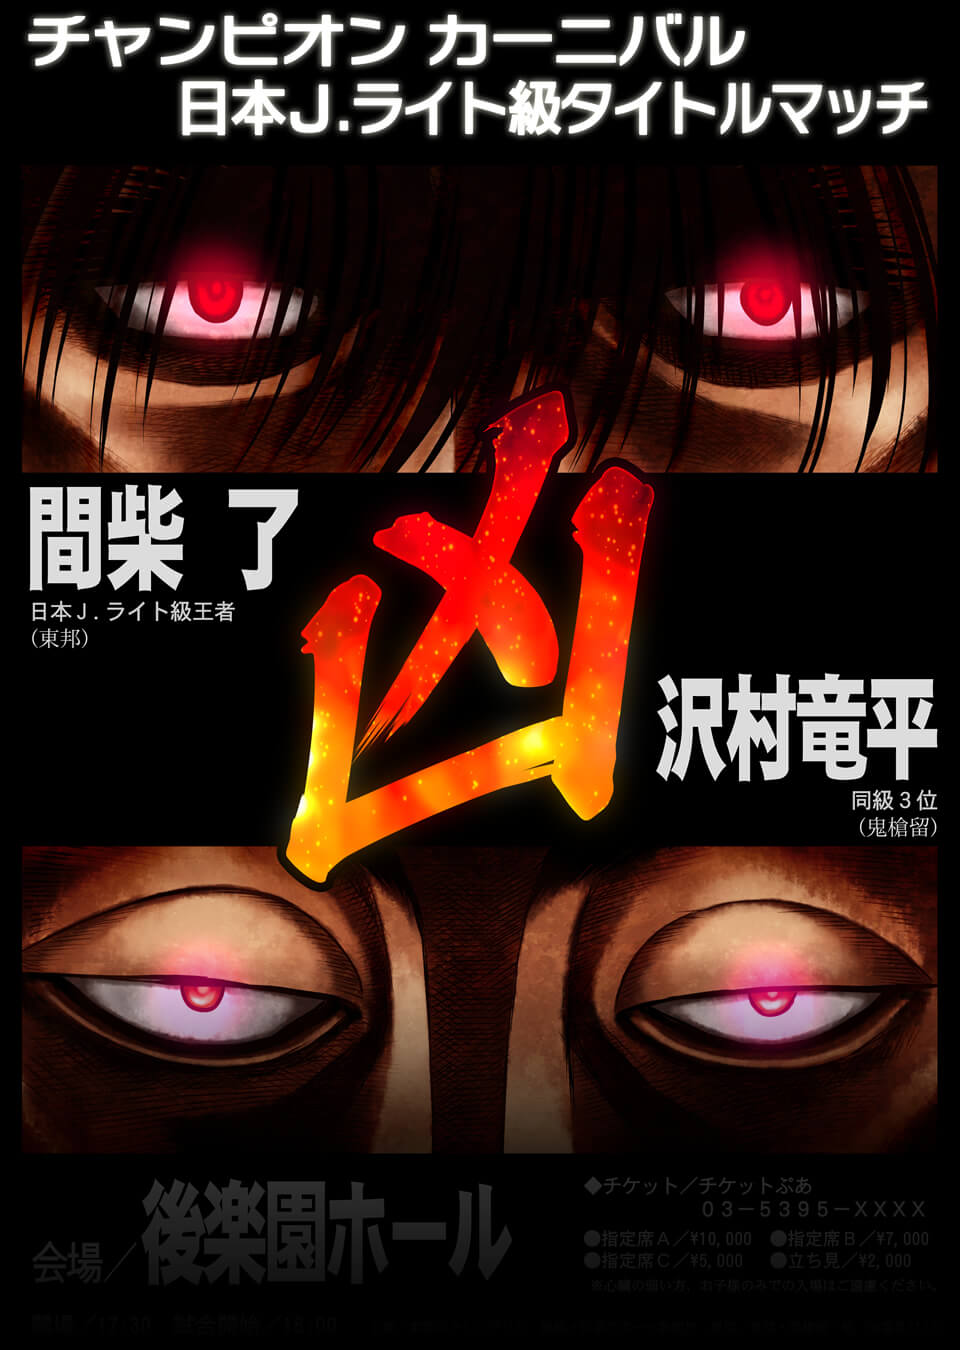 Hajime no Ippo Season 4: The Law of the Ring